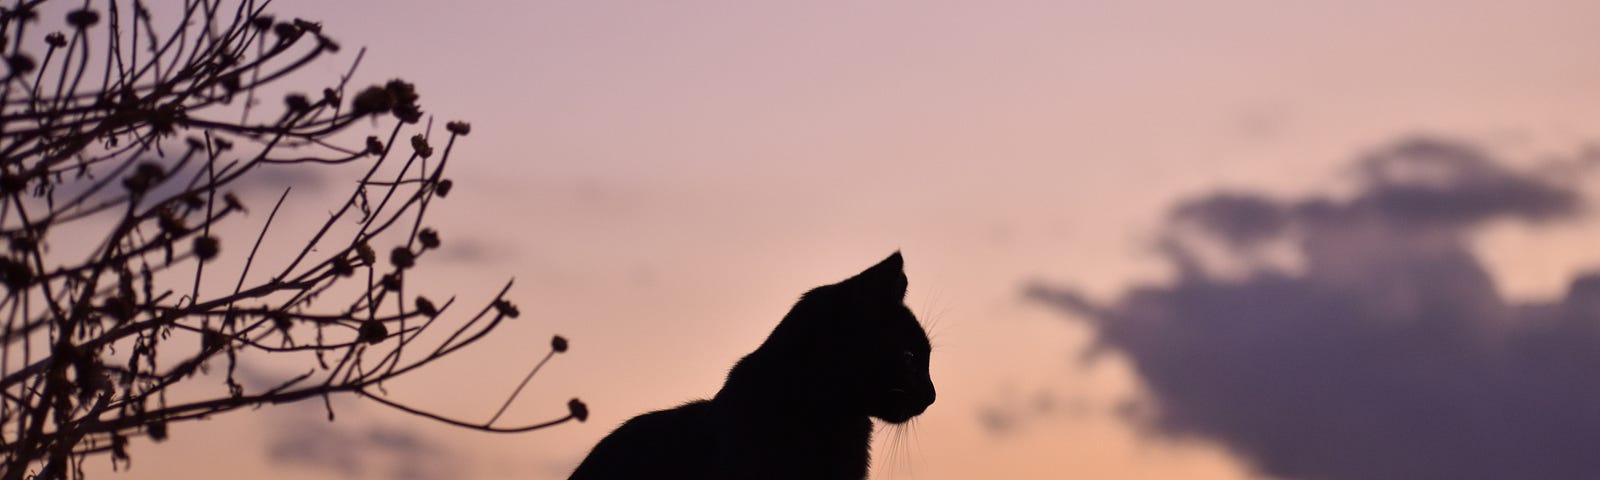 black cat in sunset